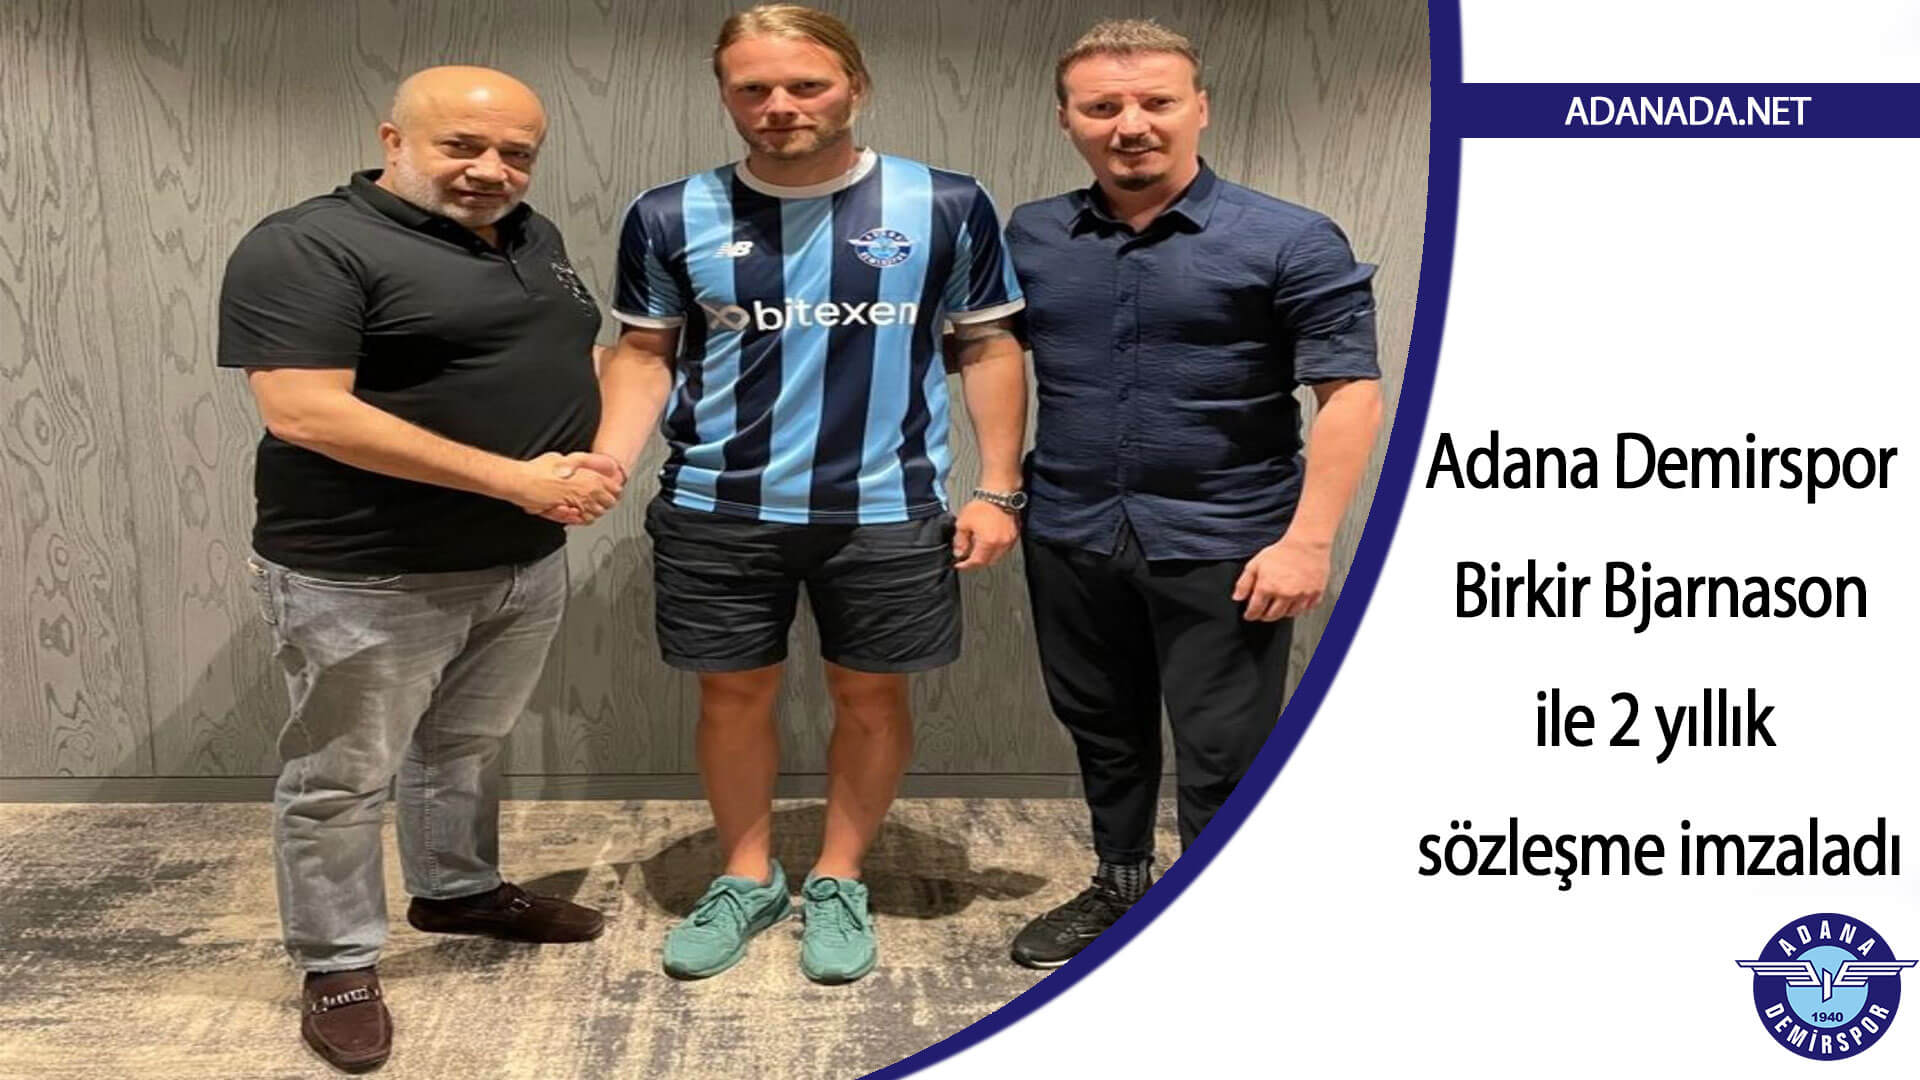 Adana Demirspor, Bjarnason ile 2 yıllık sözleşme imzaladı